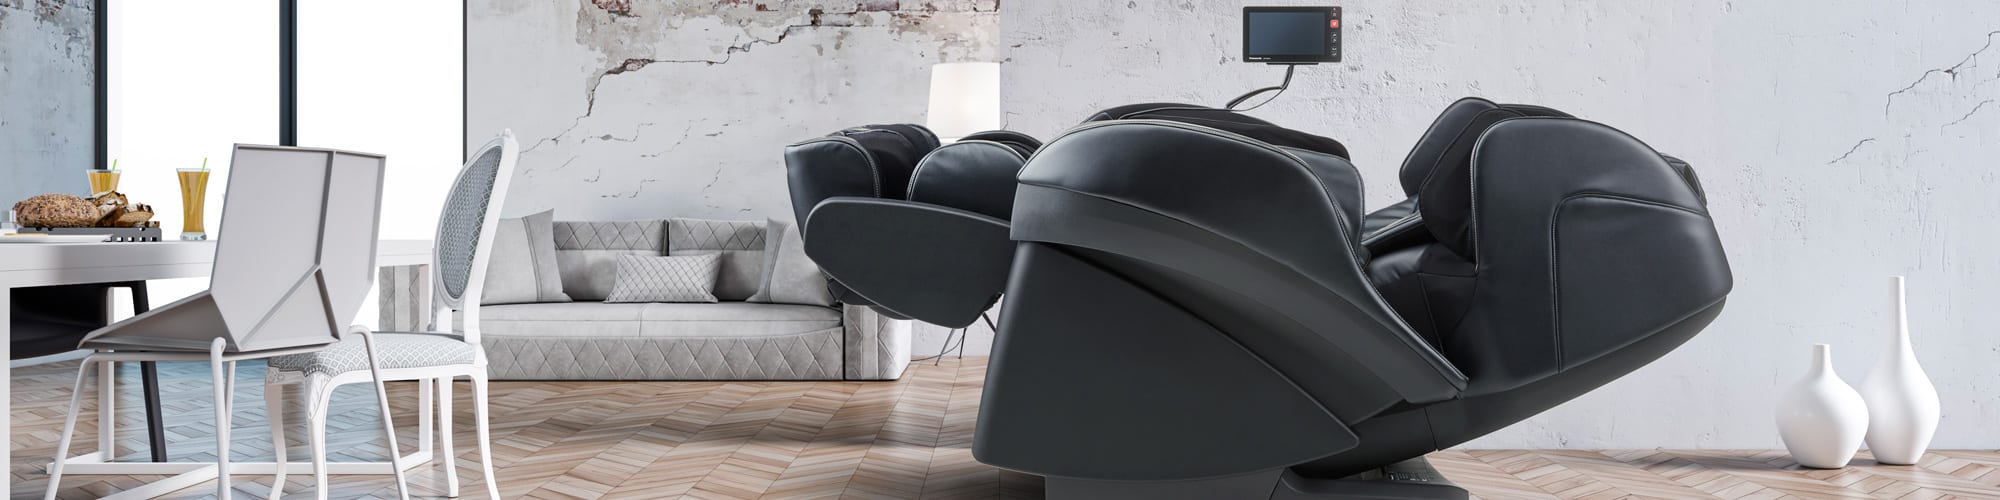 Panasonic MAk1 massage chair